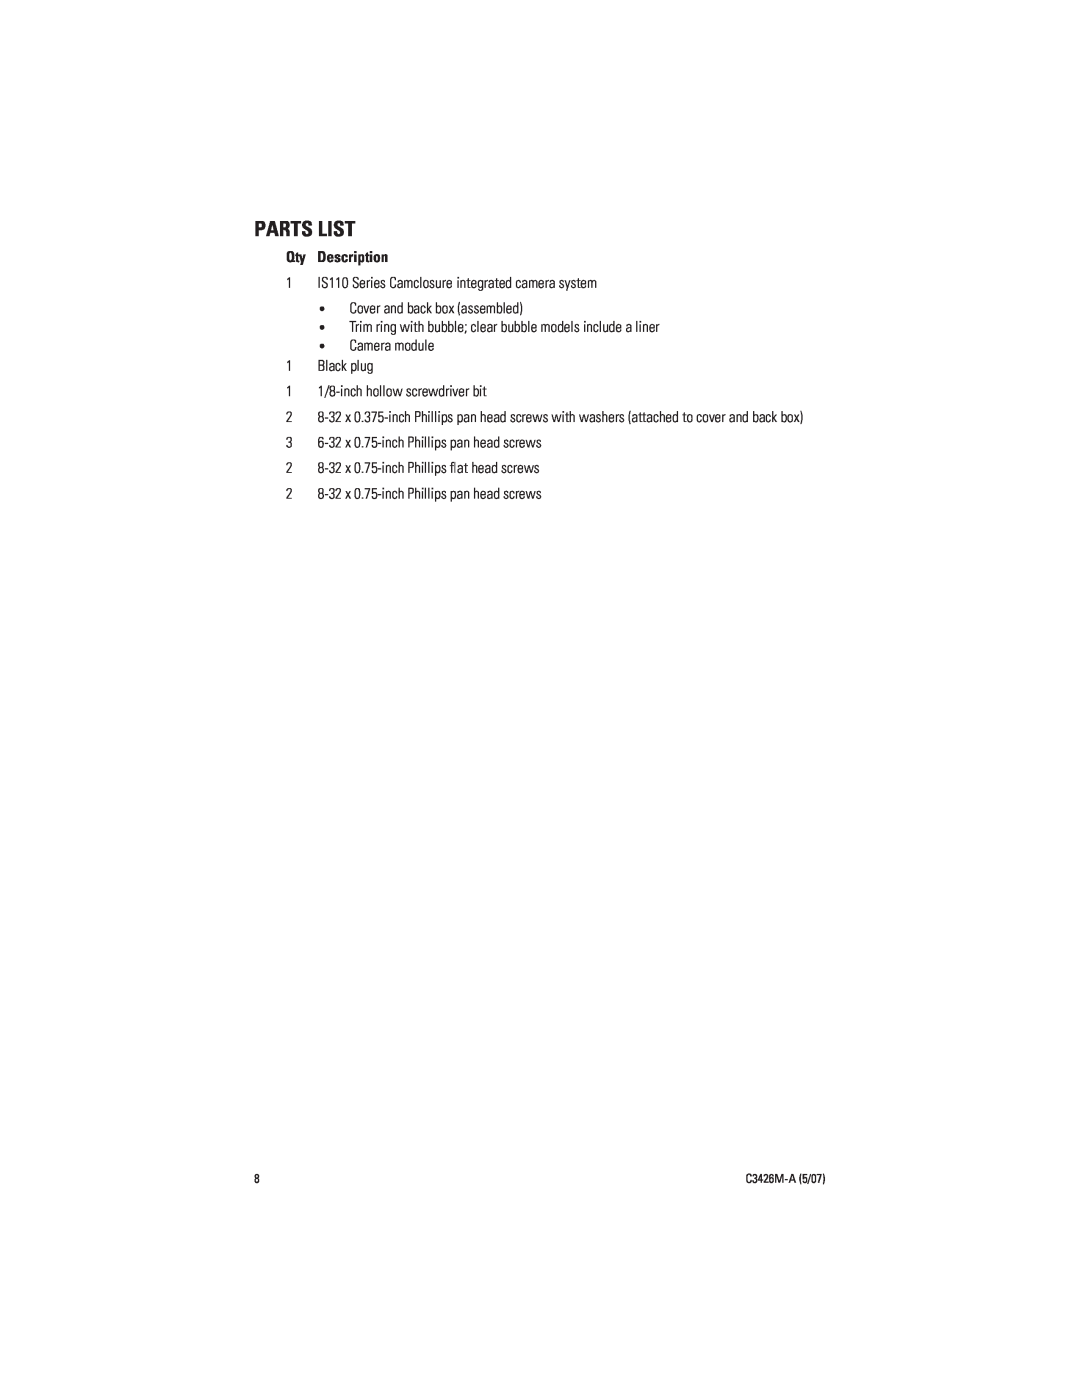 Pelco C3426M-A (5/07) manual Parts List, Qty Description 